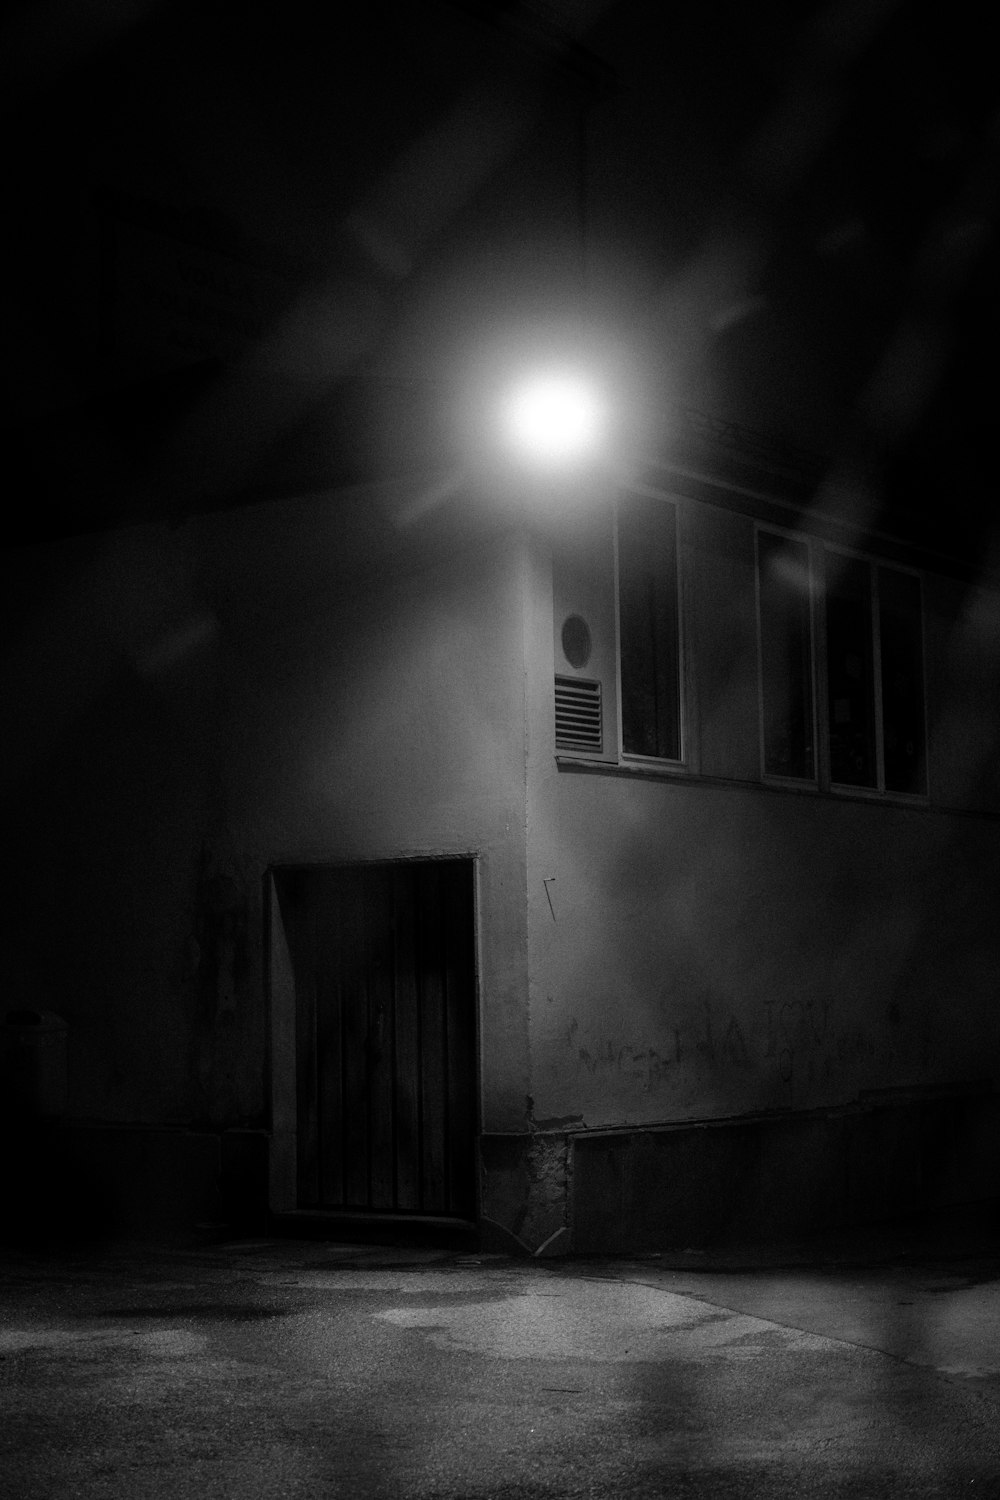 Foto in scala di grigi della lampadina accesa vicino alla finestra